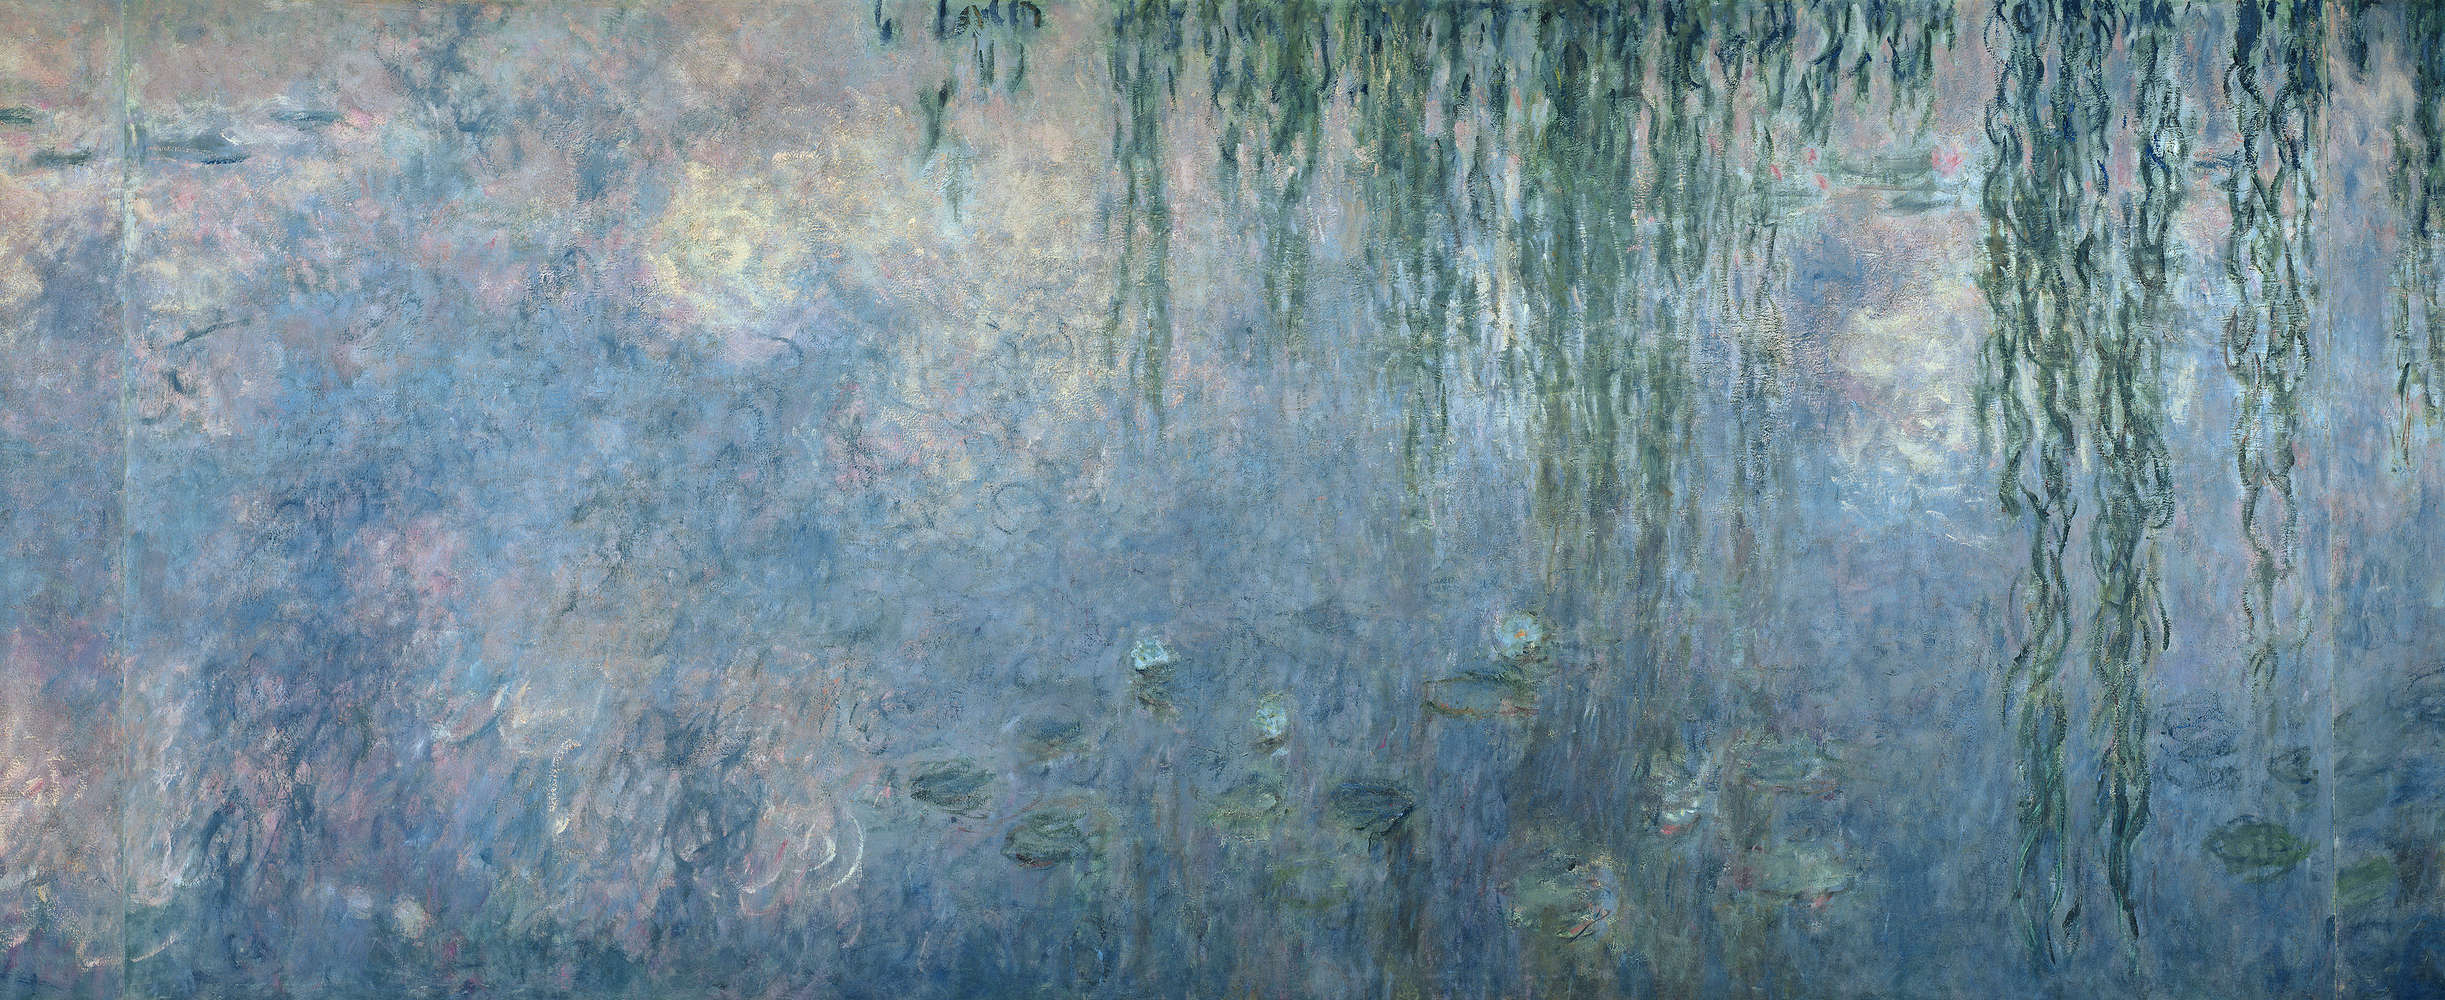             Muurschildering "Waterlelies: ochtend met treurwilgen" detail van Claude Monet
        